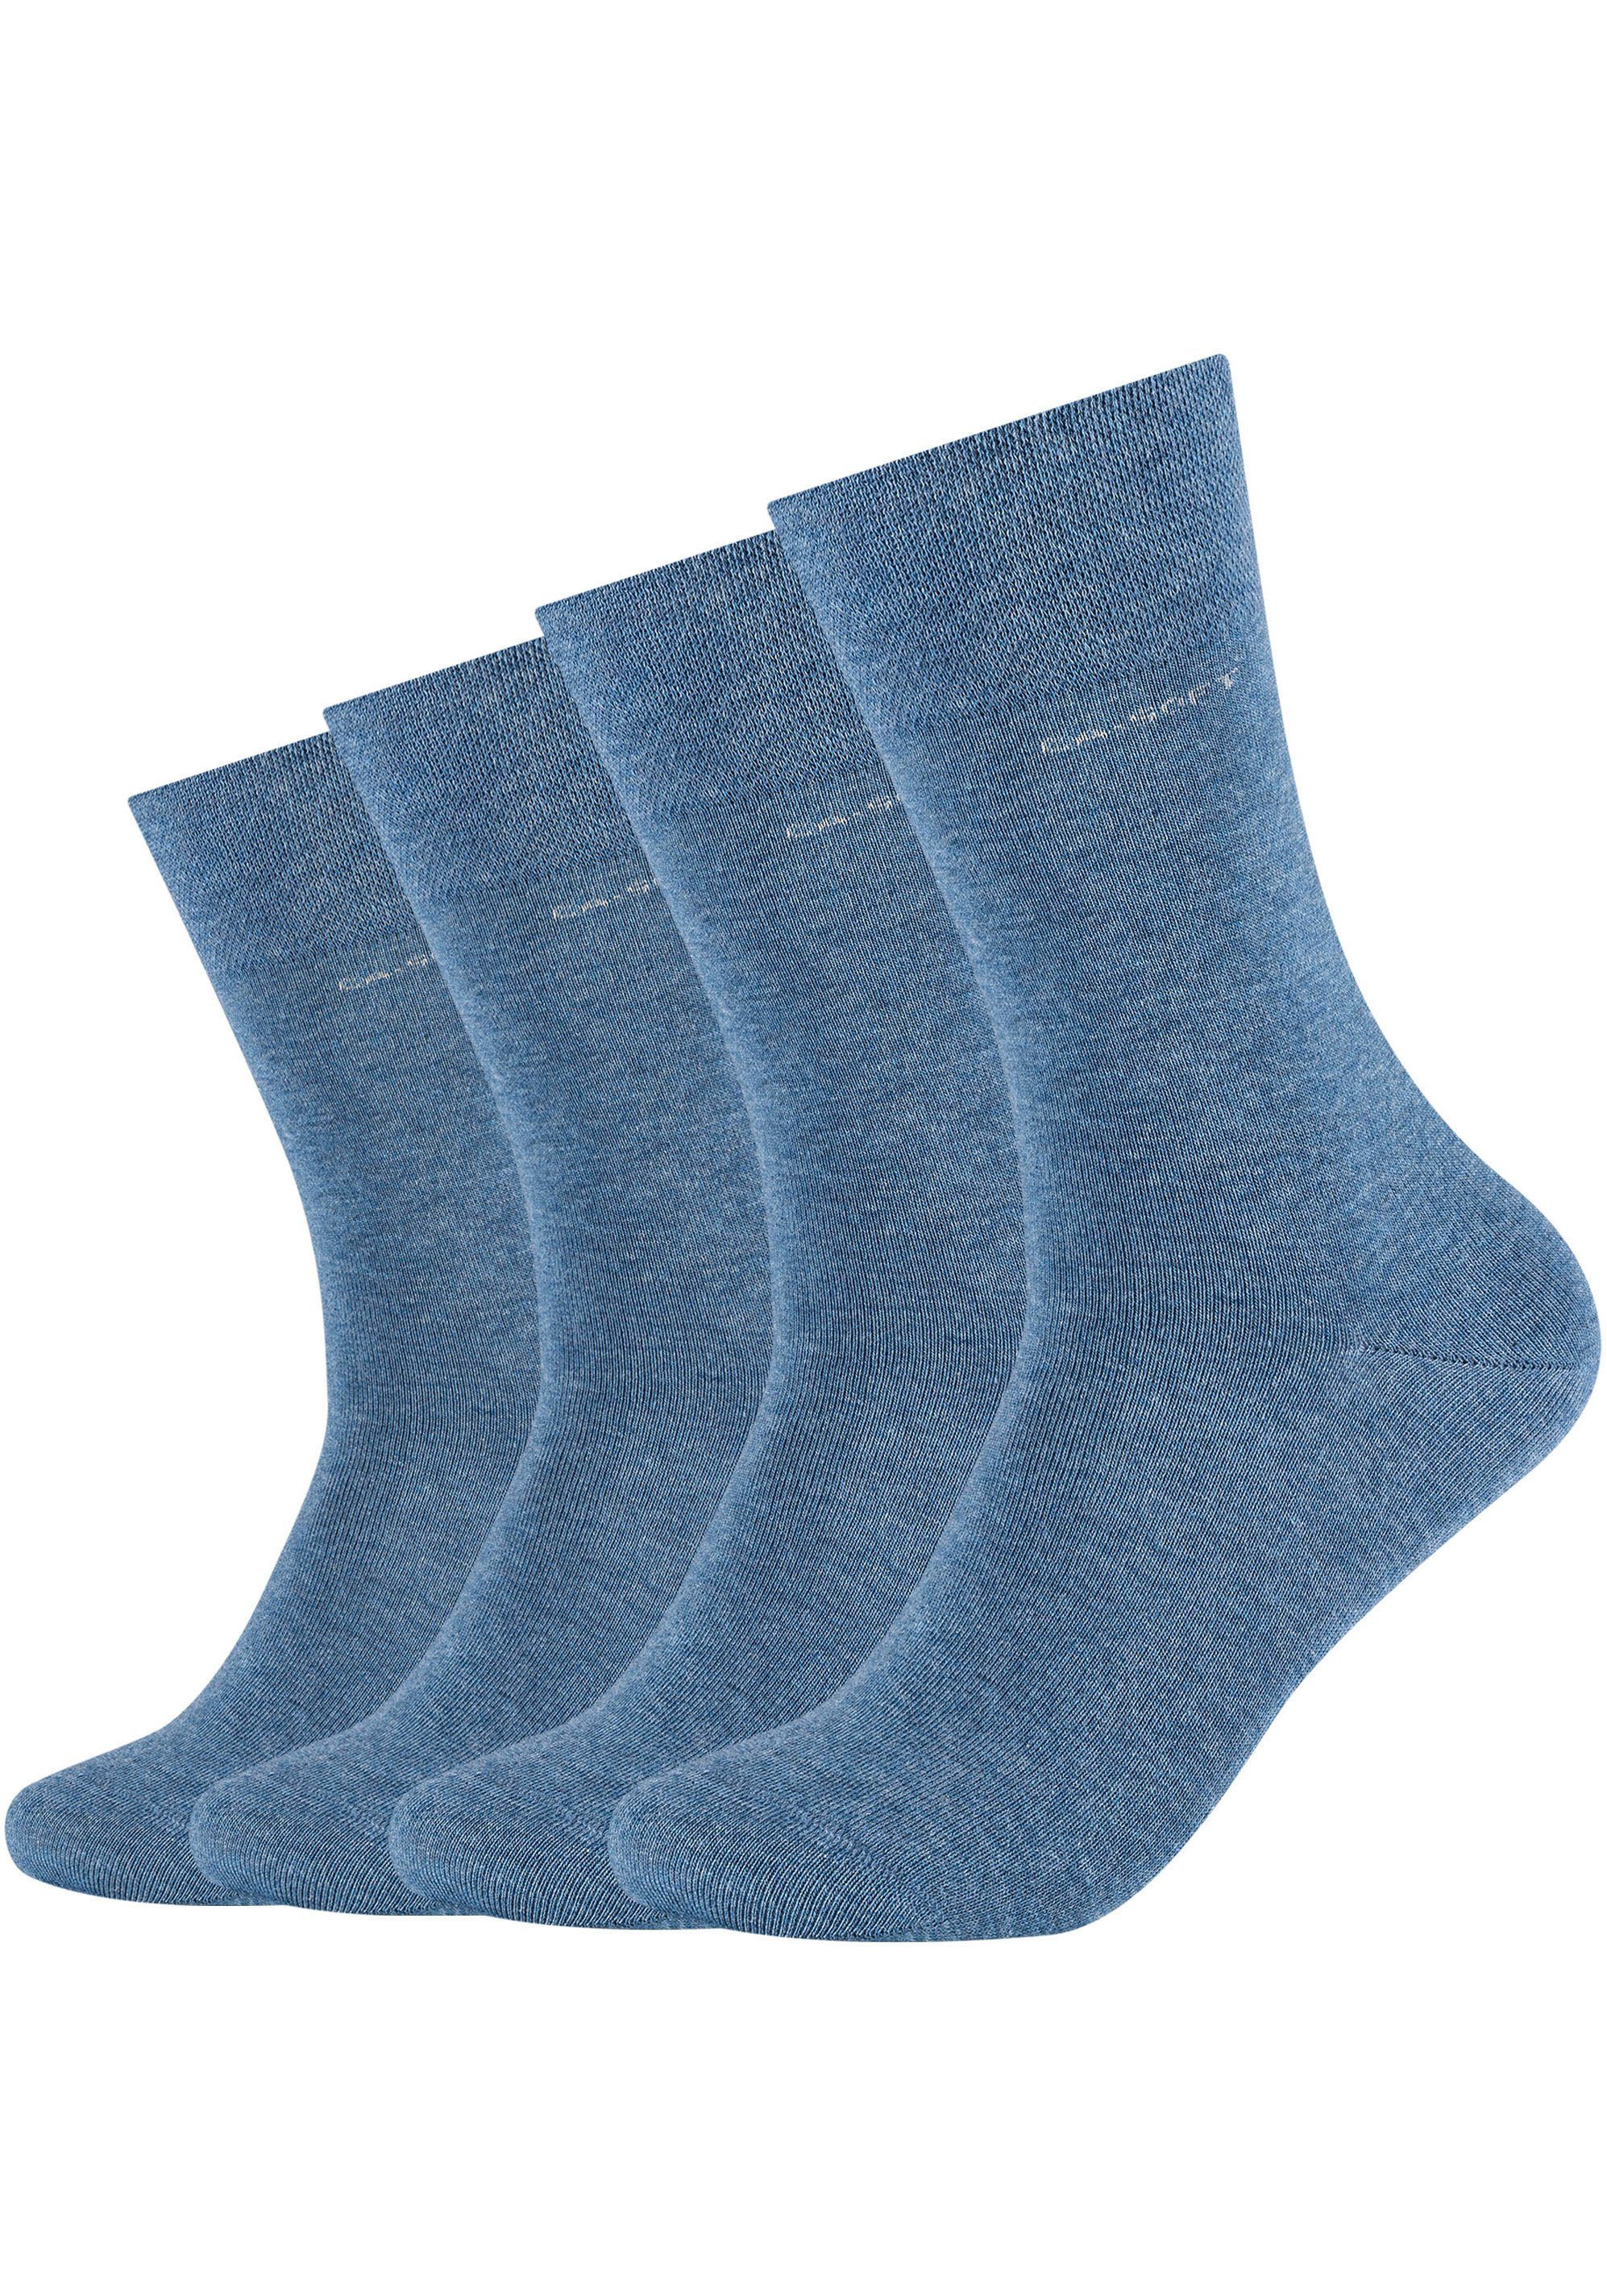 4-Paar) und Fersen- Camano Mit denim-melange verstärktem Zehenbereich Socken (Packung,